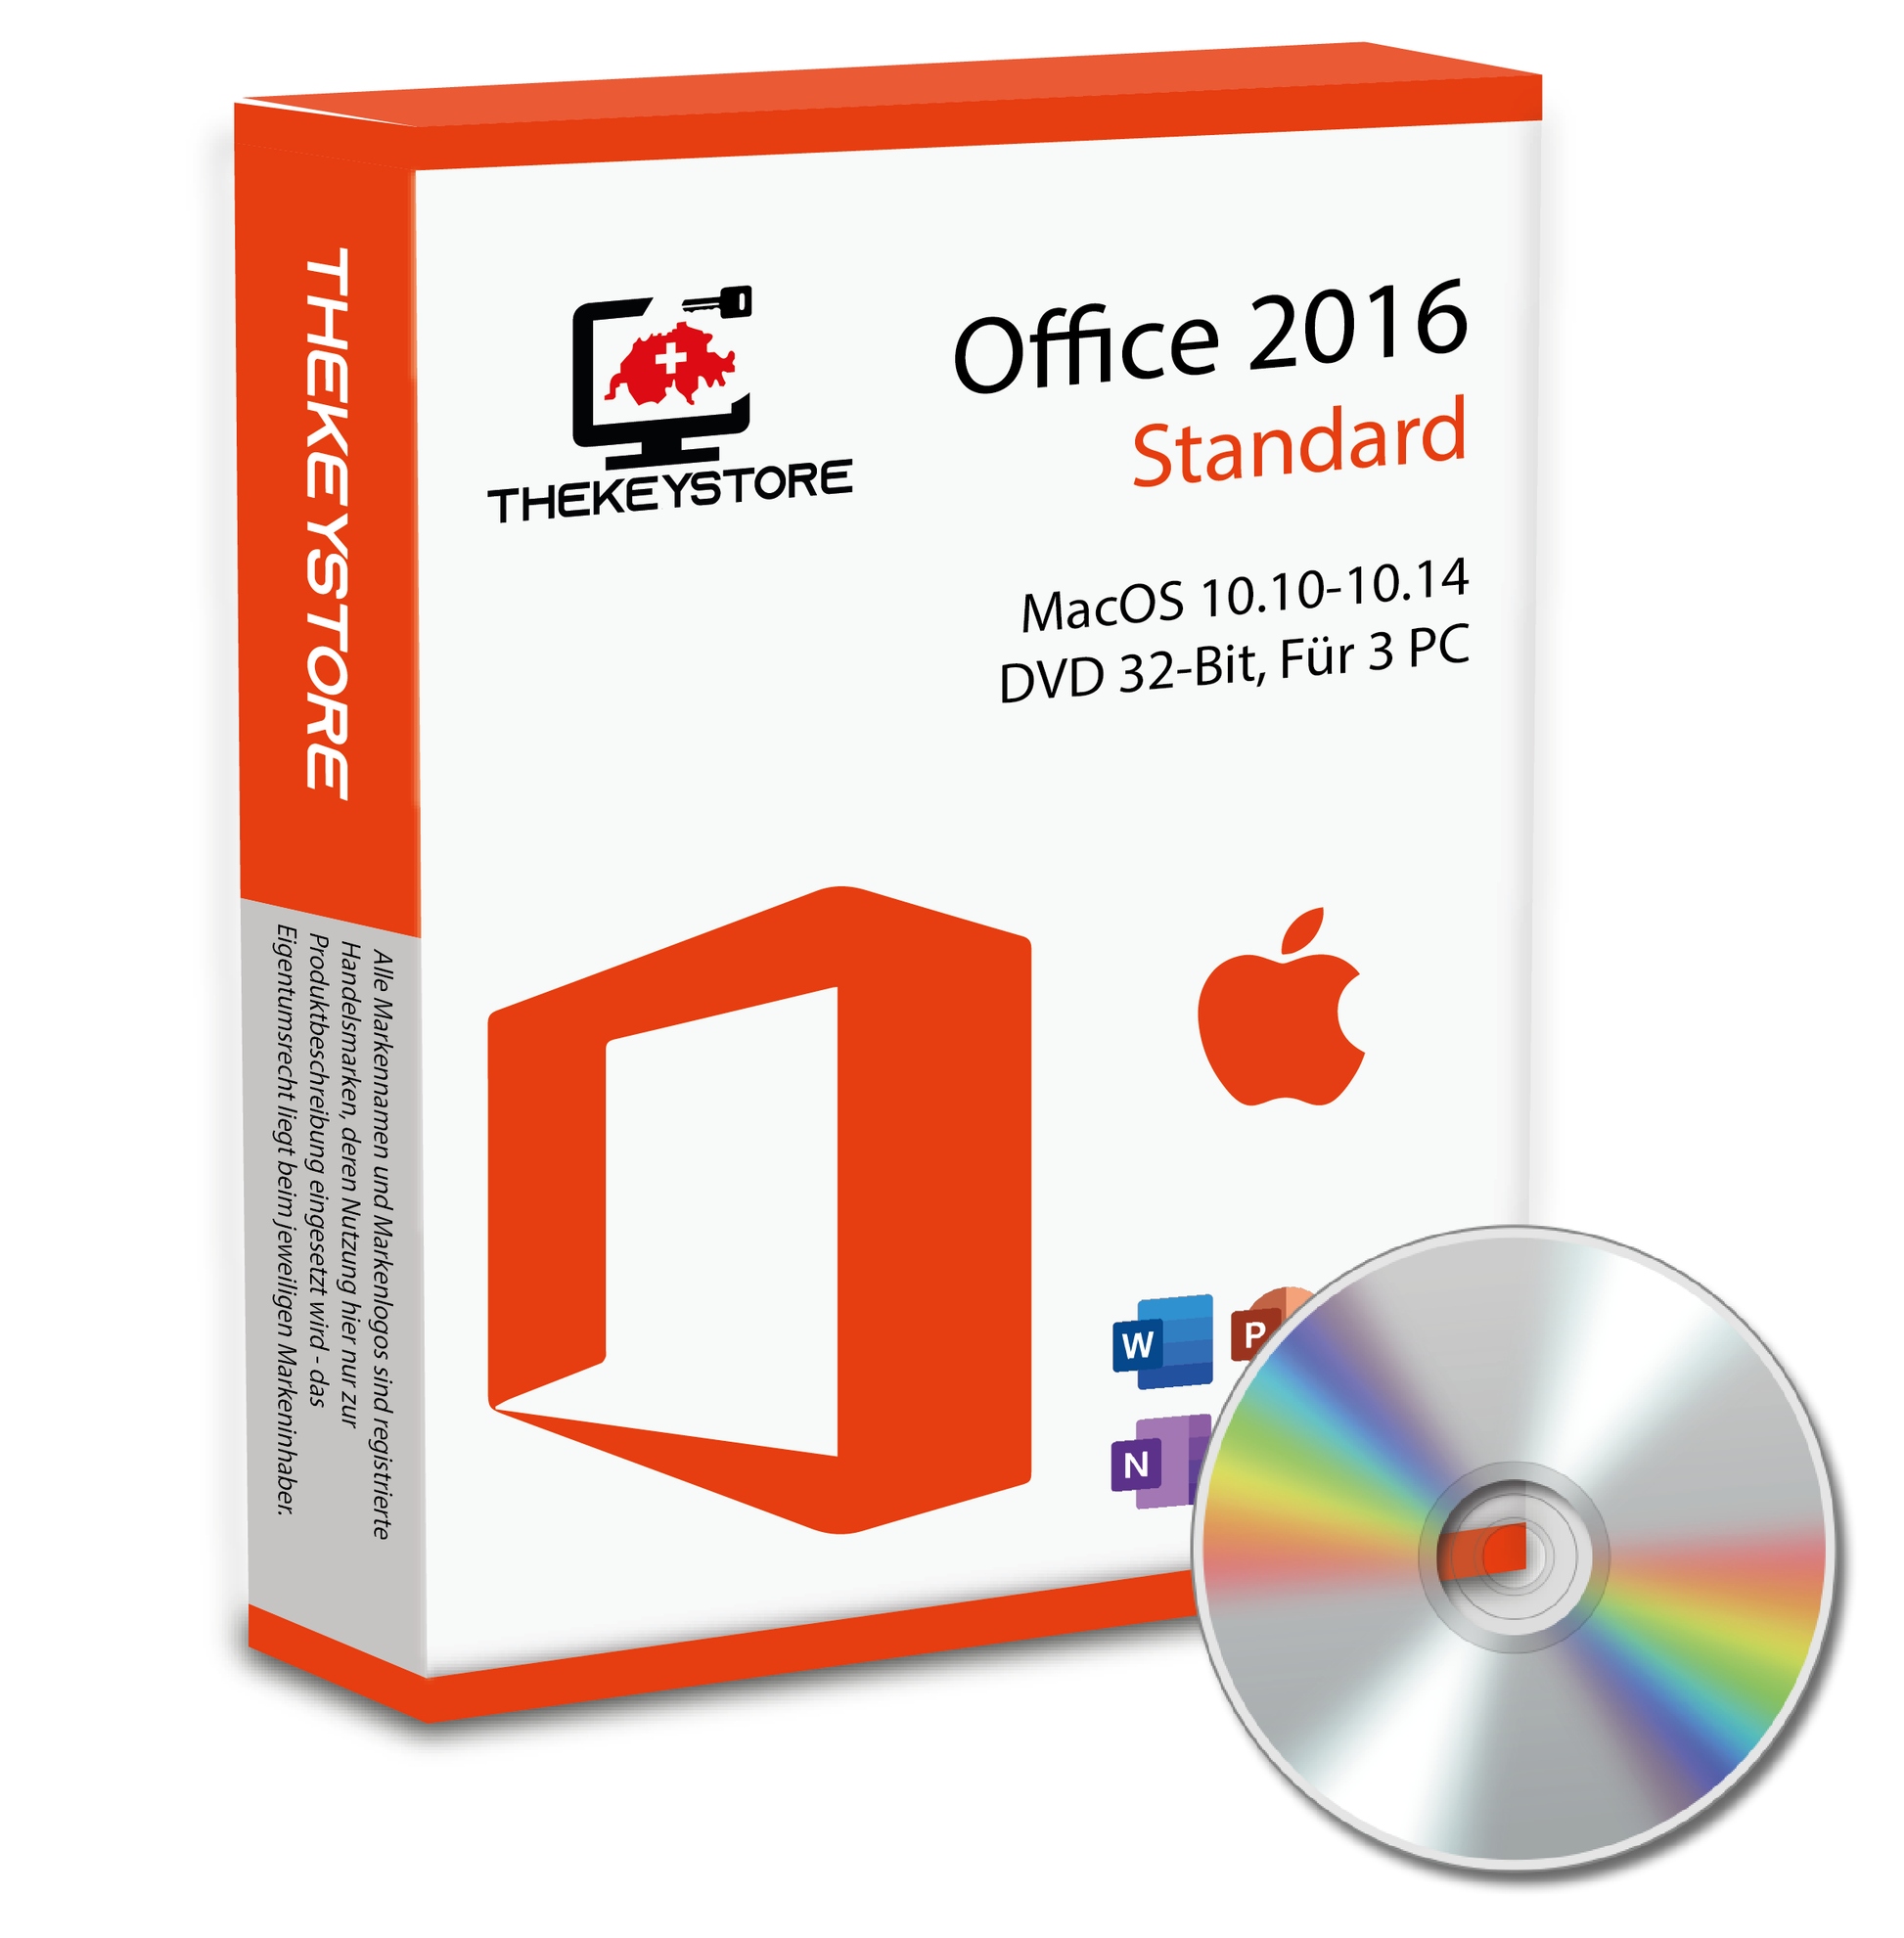 Microsoft Office 2016 Standard MacOS 10.10-10.14 - Für 3 PC - TheKeyStore Schweiz